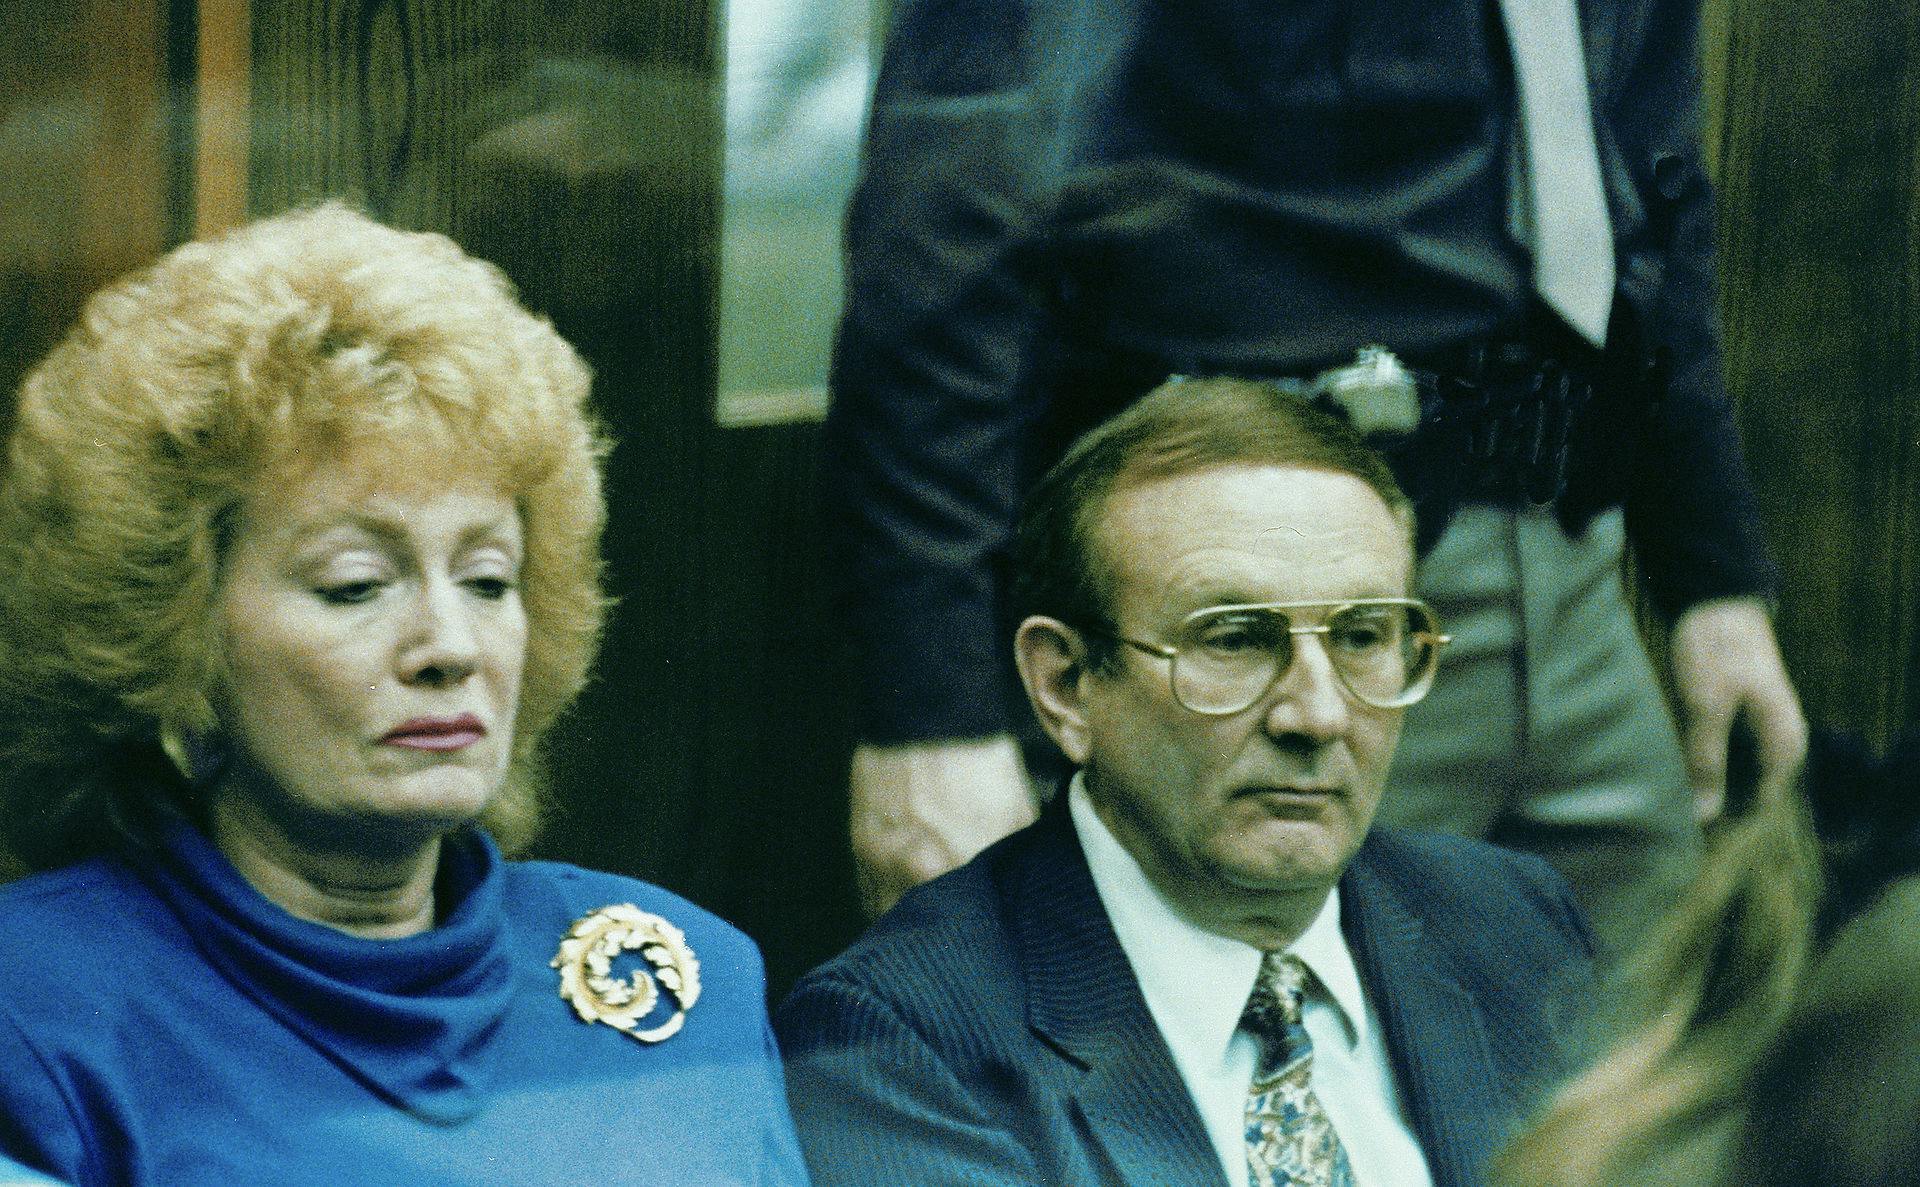 Lionel Dahmer i retten sammen med sin anden hustru Shari.
